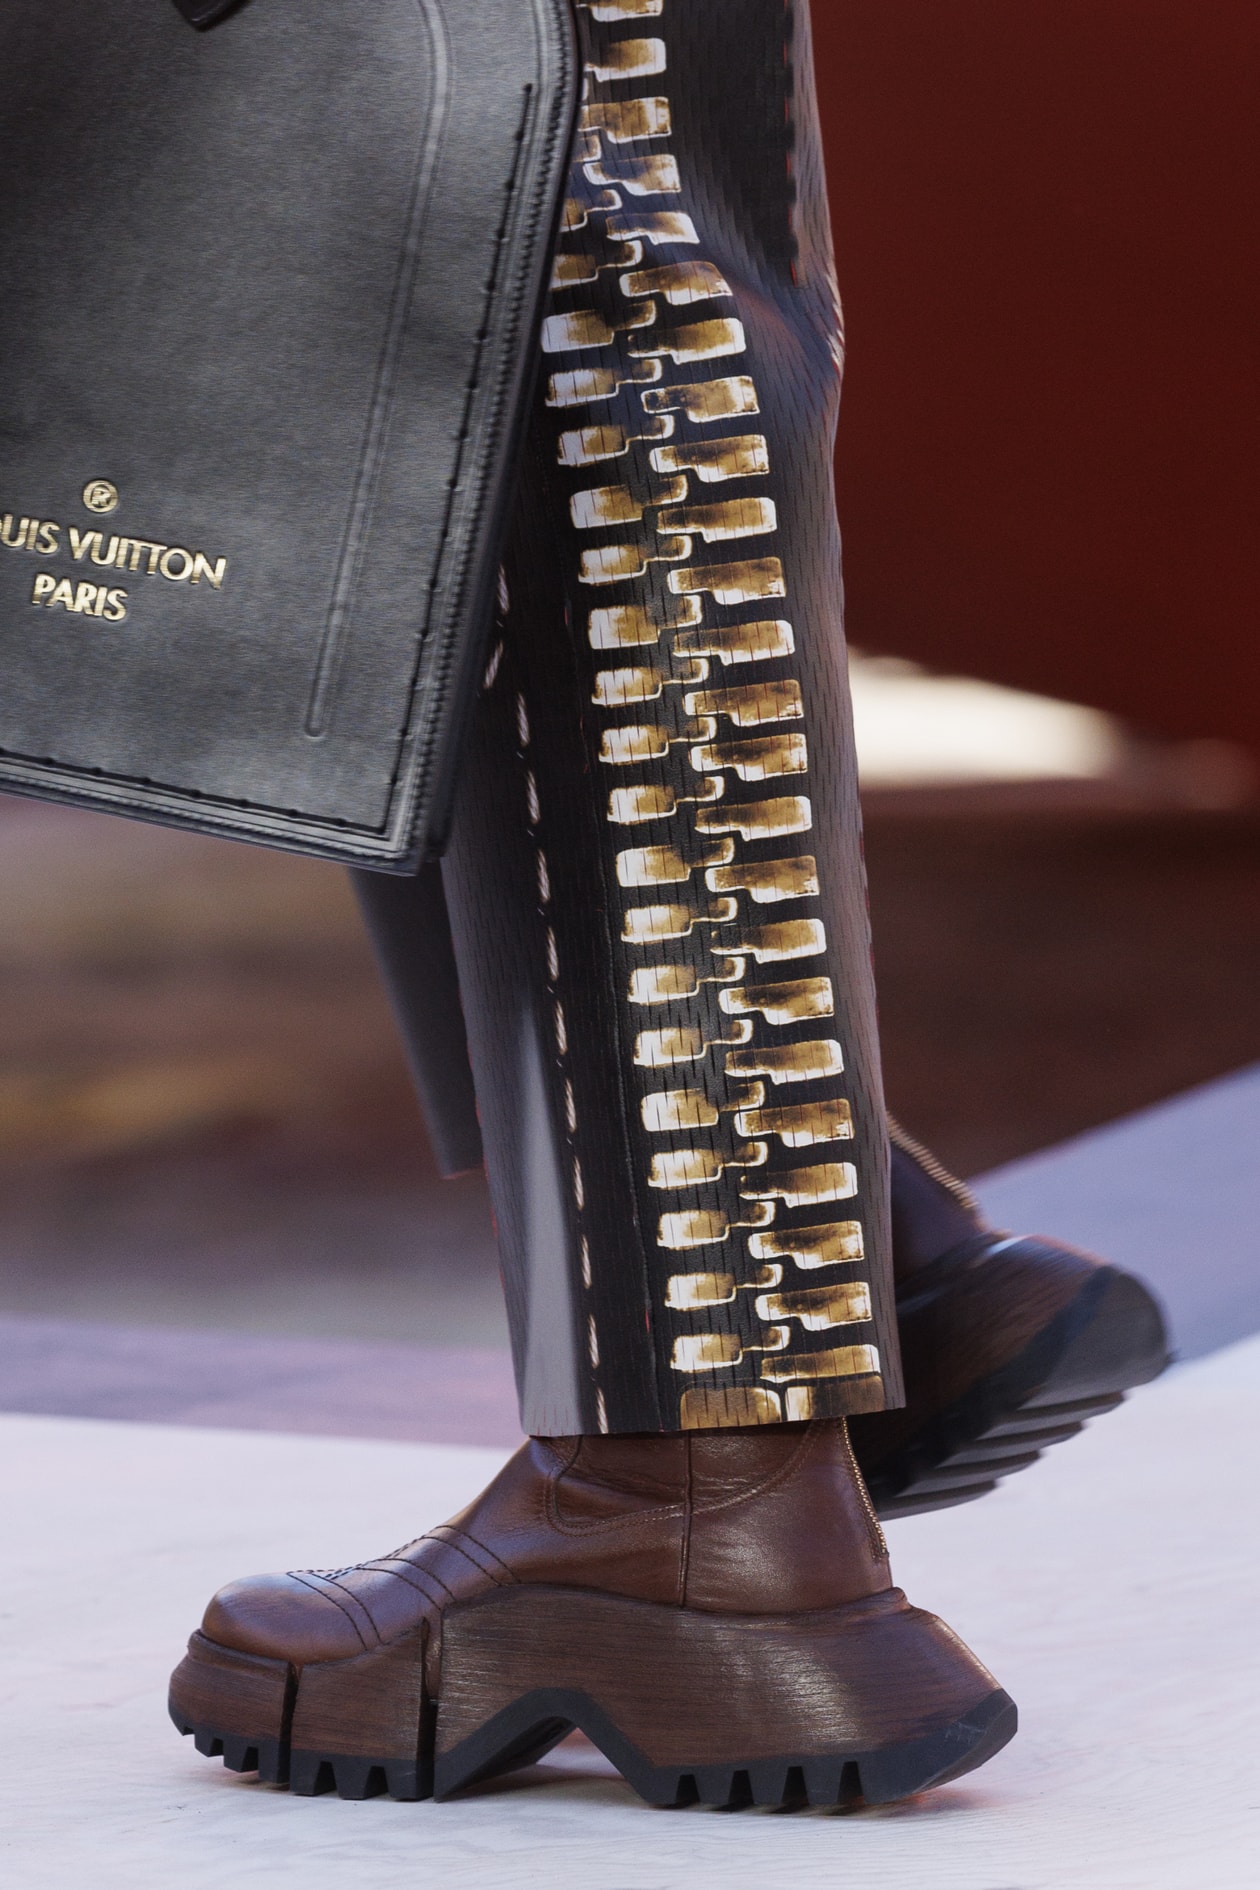 经典再造！Louis Vuitton 推出全新 LV Archlight 运动鞋系列